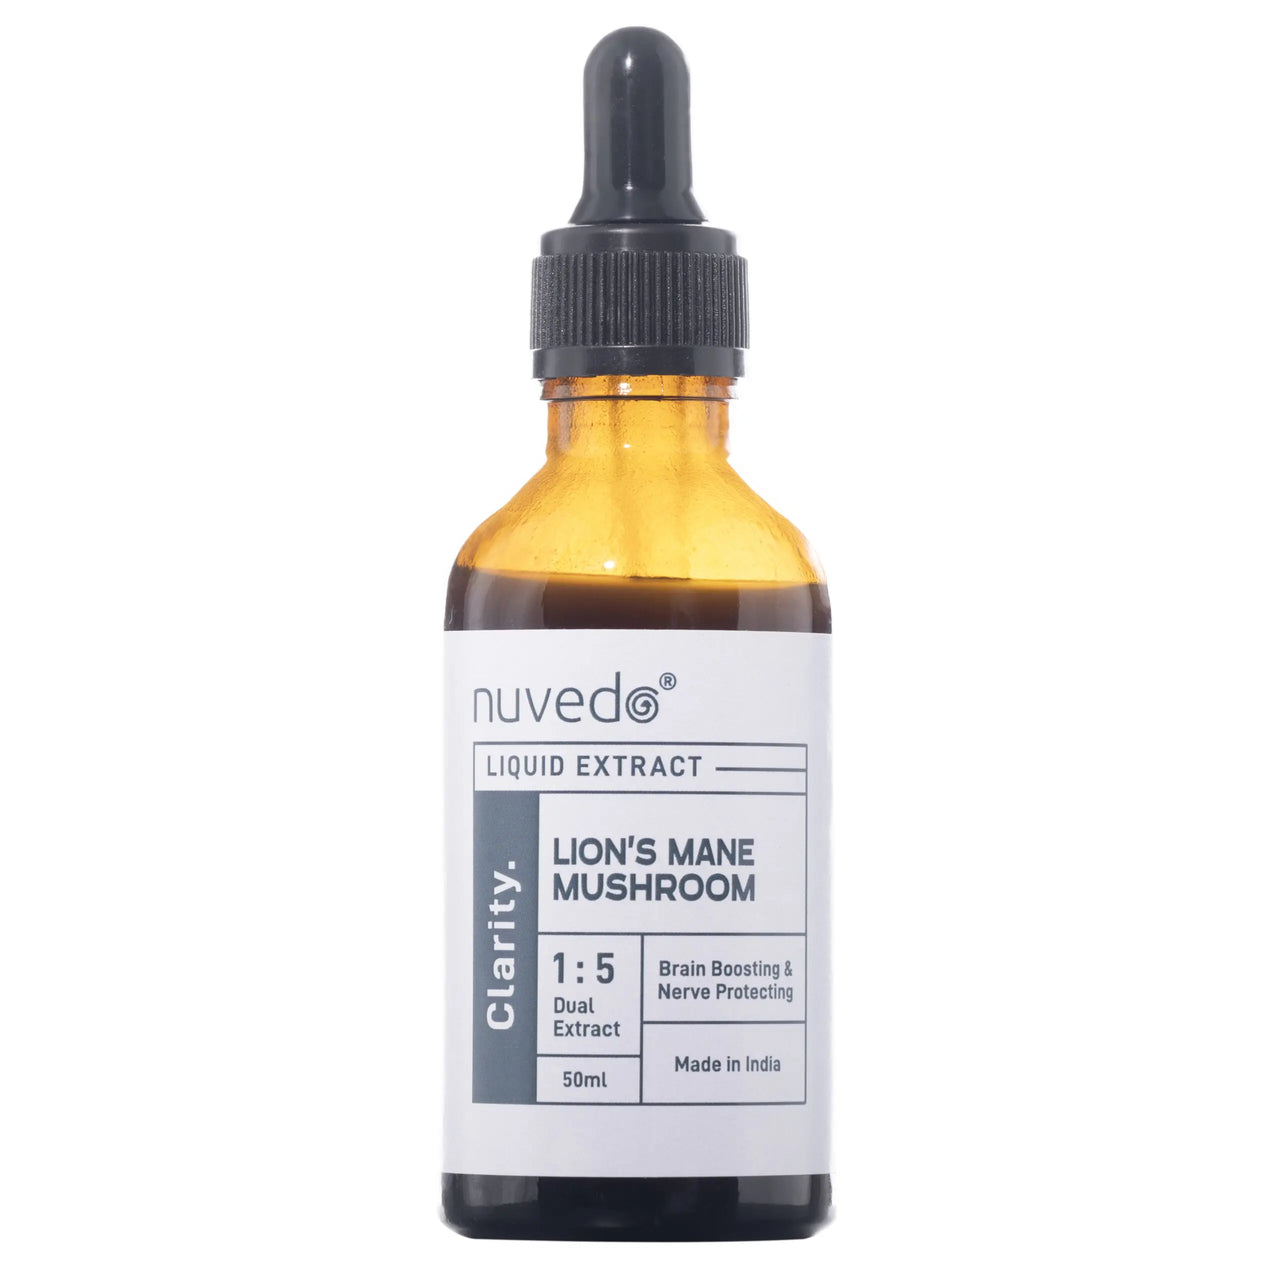 Nuvedo - Lion’s Mane Mushroom Liquid Extract